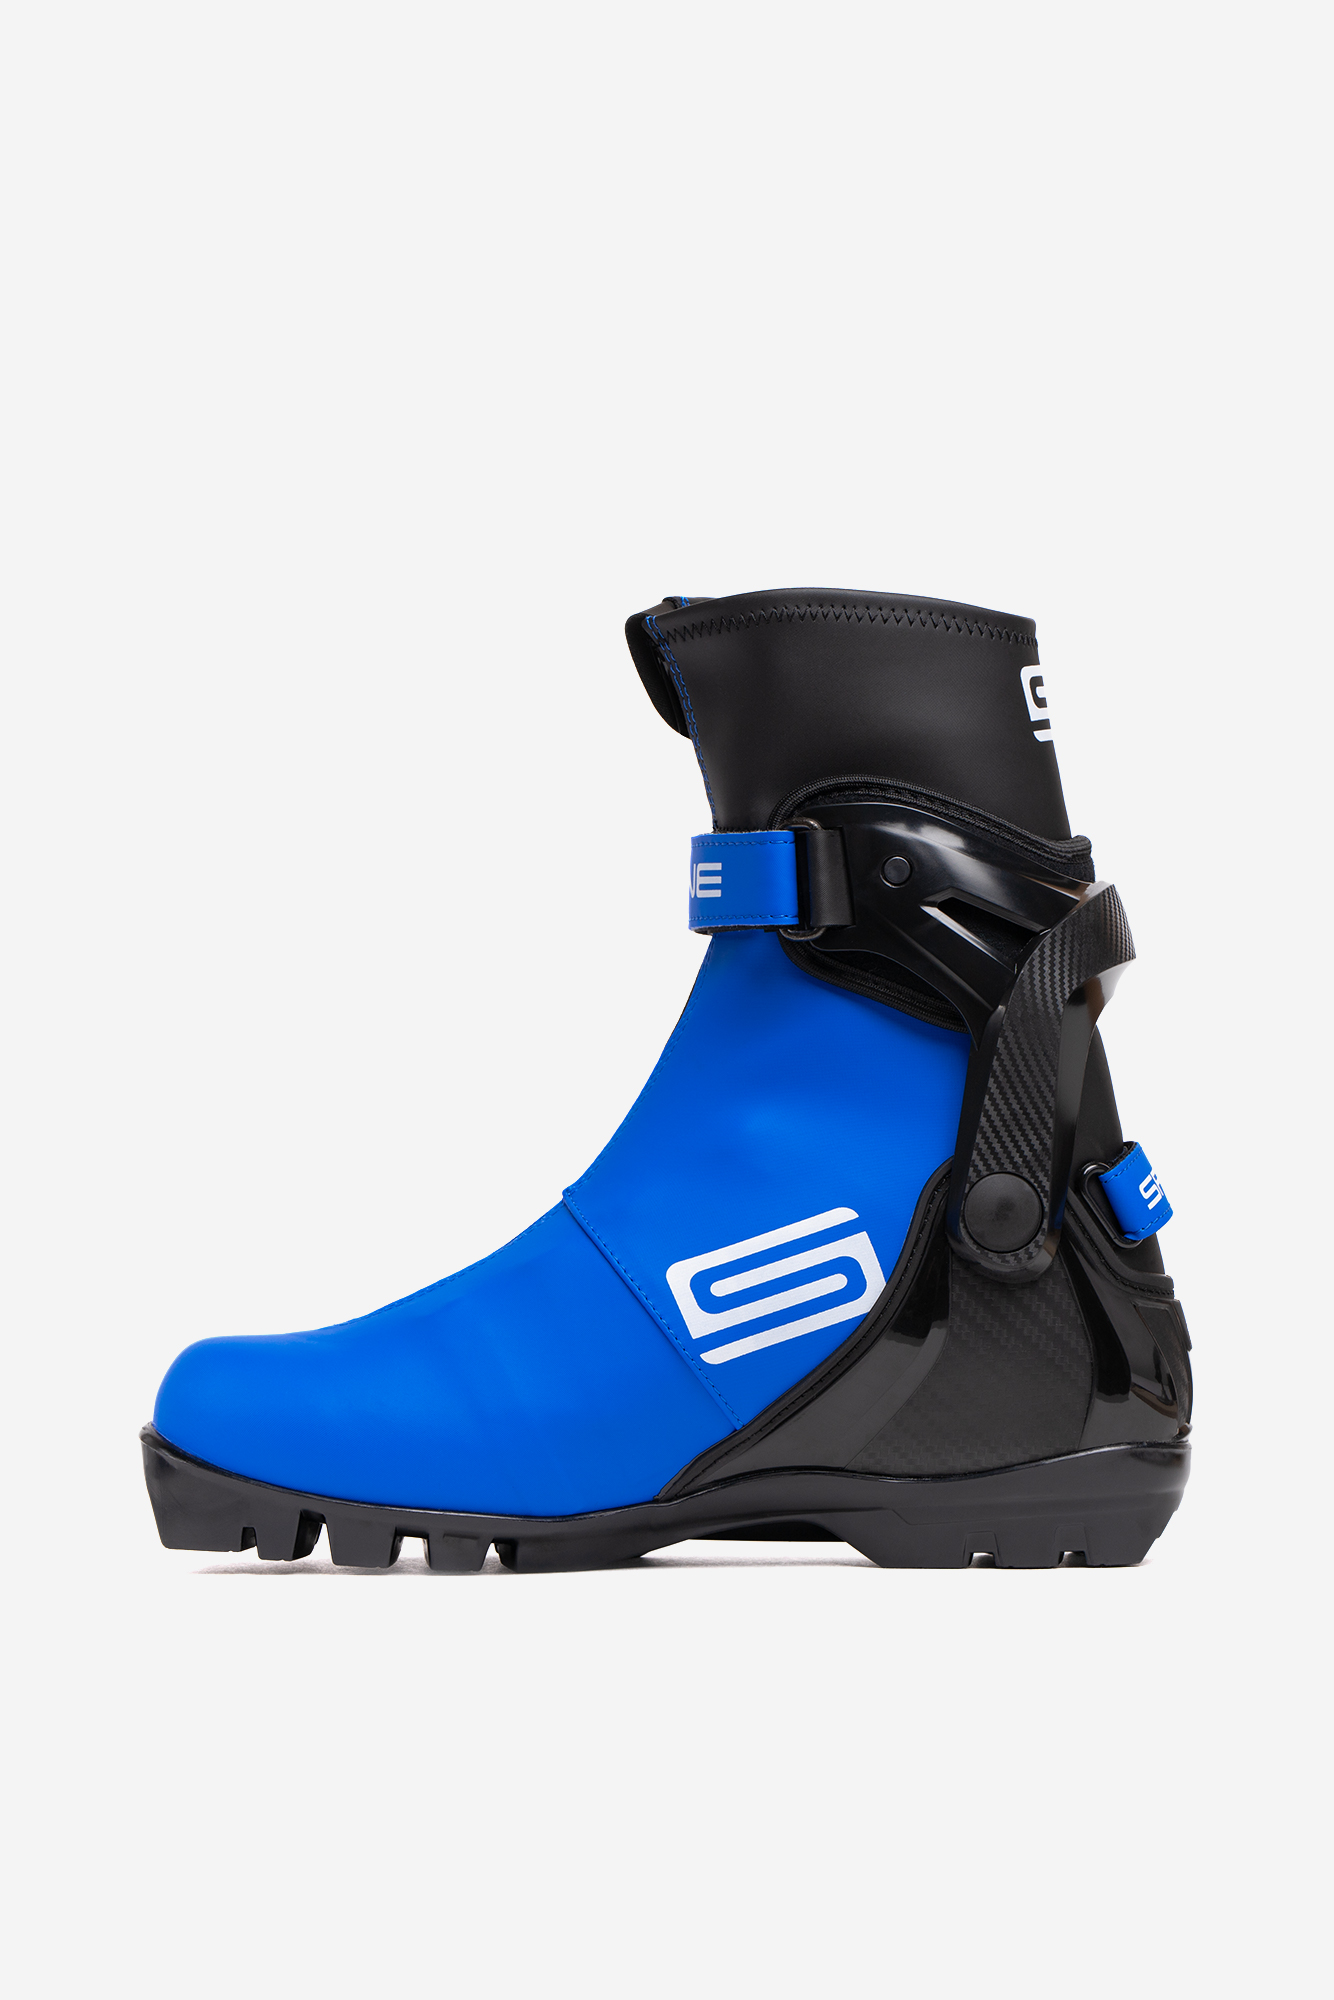 Лыжные ботинки SNS Spine Concept Skate (496/1-22) (синий) 1334_2000